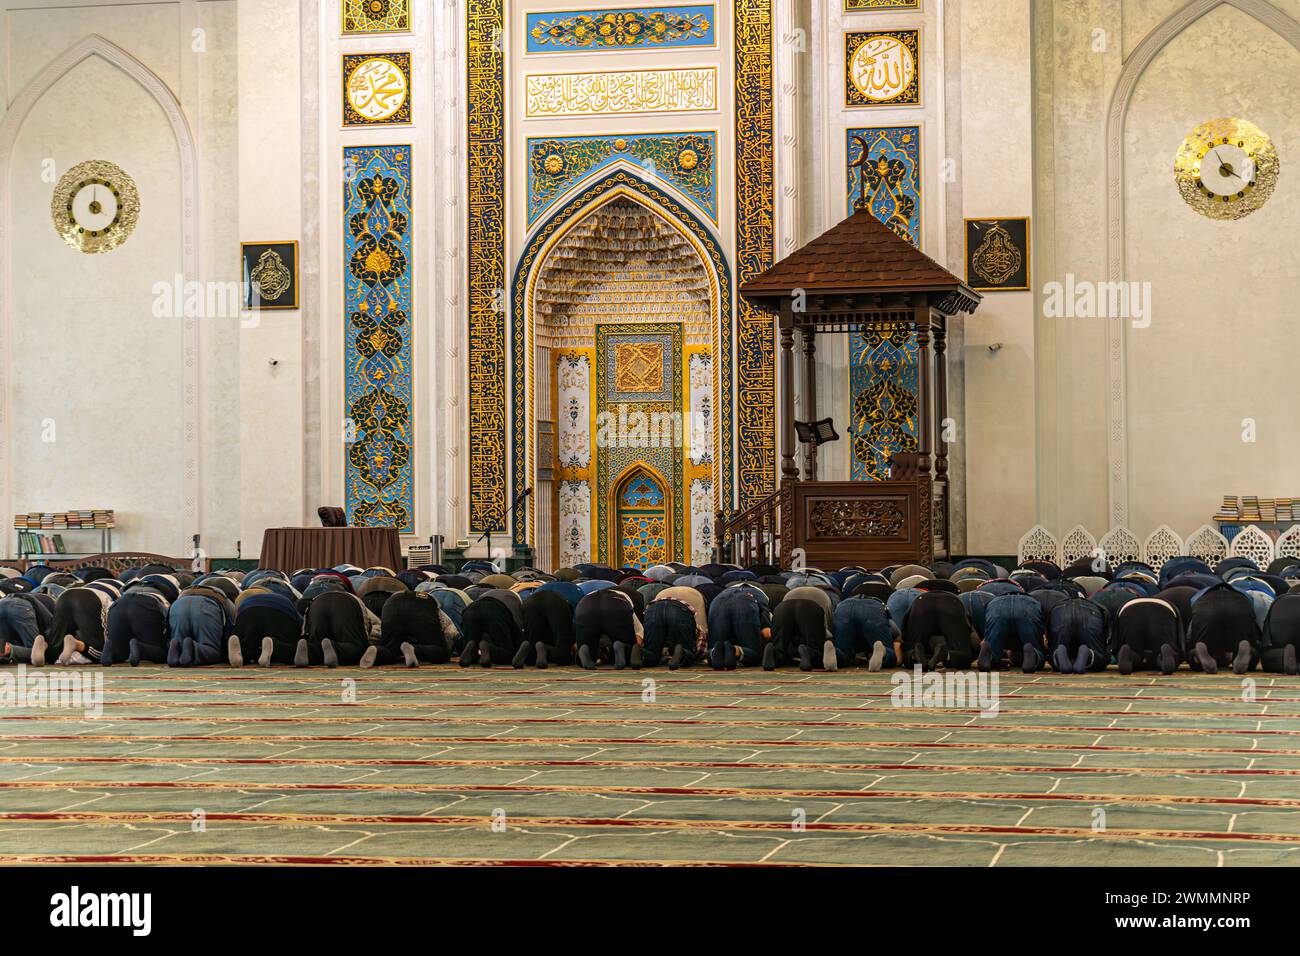 La prière musulmane pour Dieu dans la mosquée. Le peuple musulman est à genoux en train de prier. Mois Saint des musulmans du Ramadan. Musulman Banque D'Images